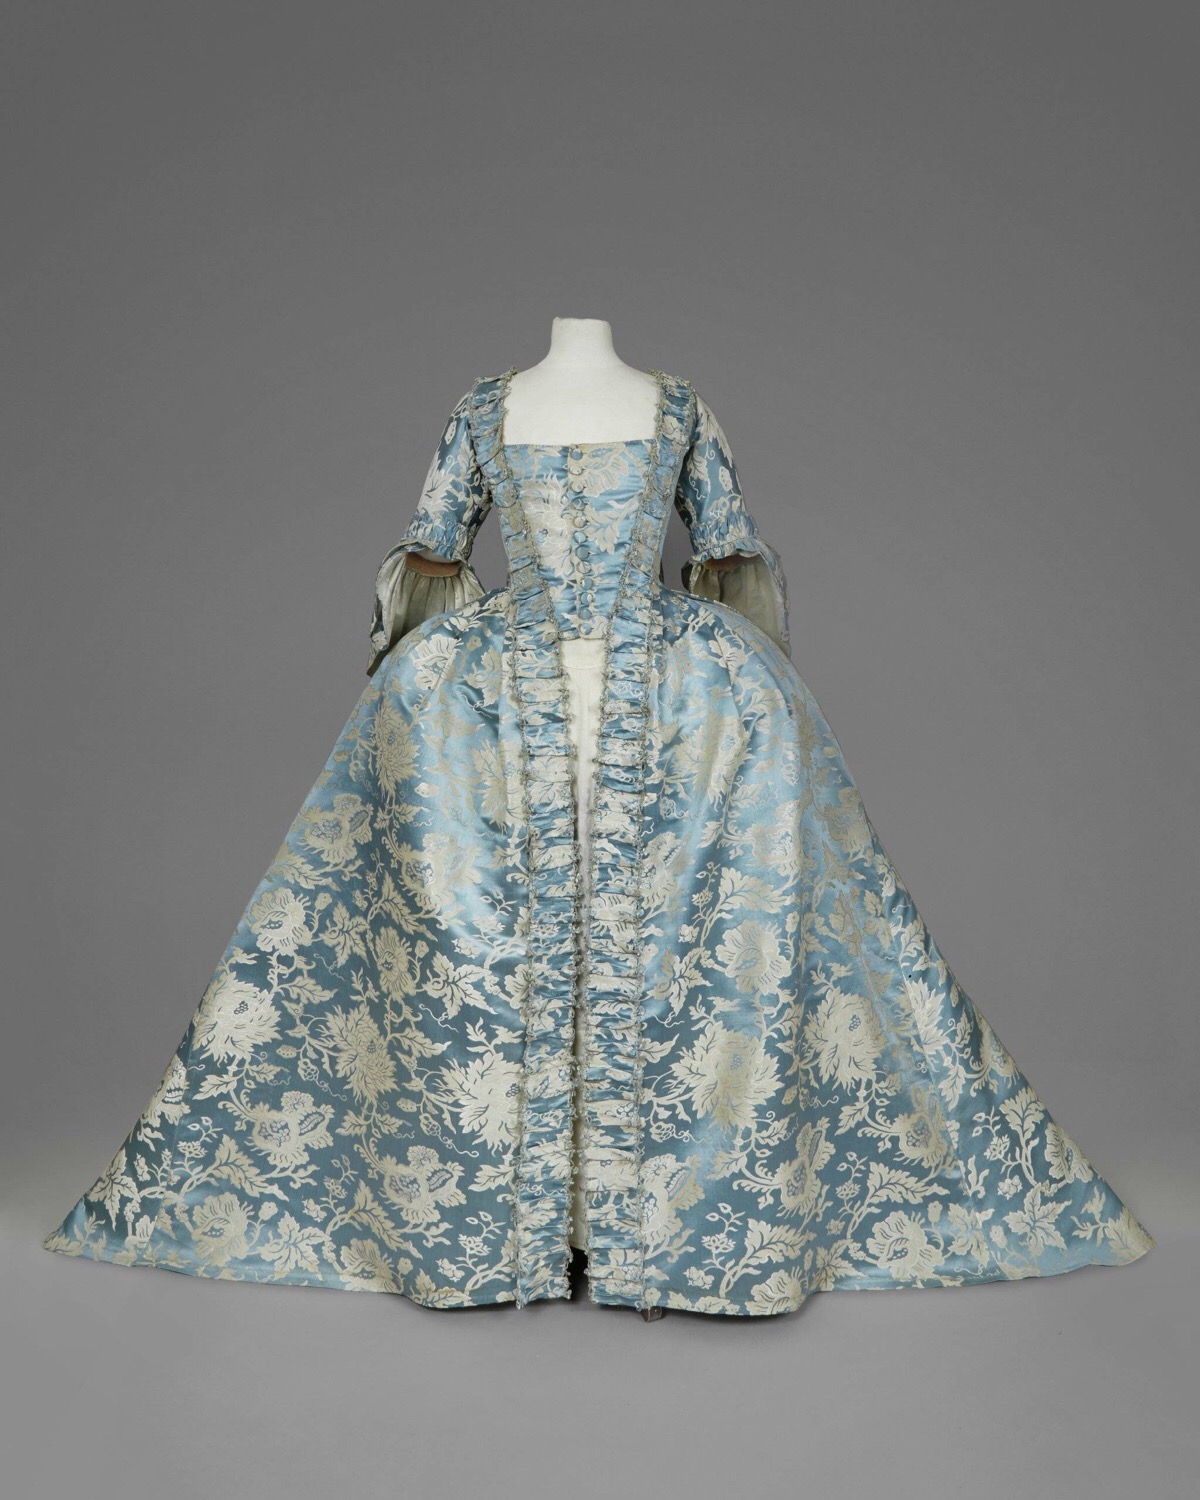 法式女袍,18世纪中叶,浅蓝白花中国丝绸,清新淡雅的色泽